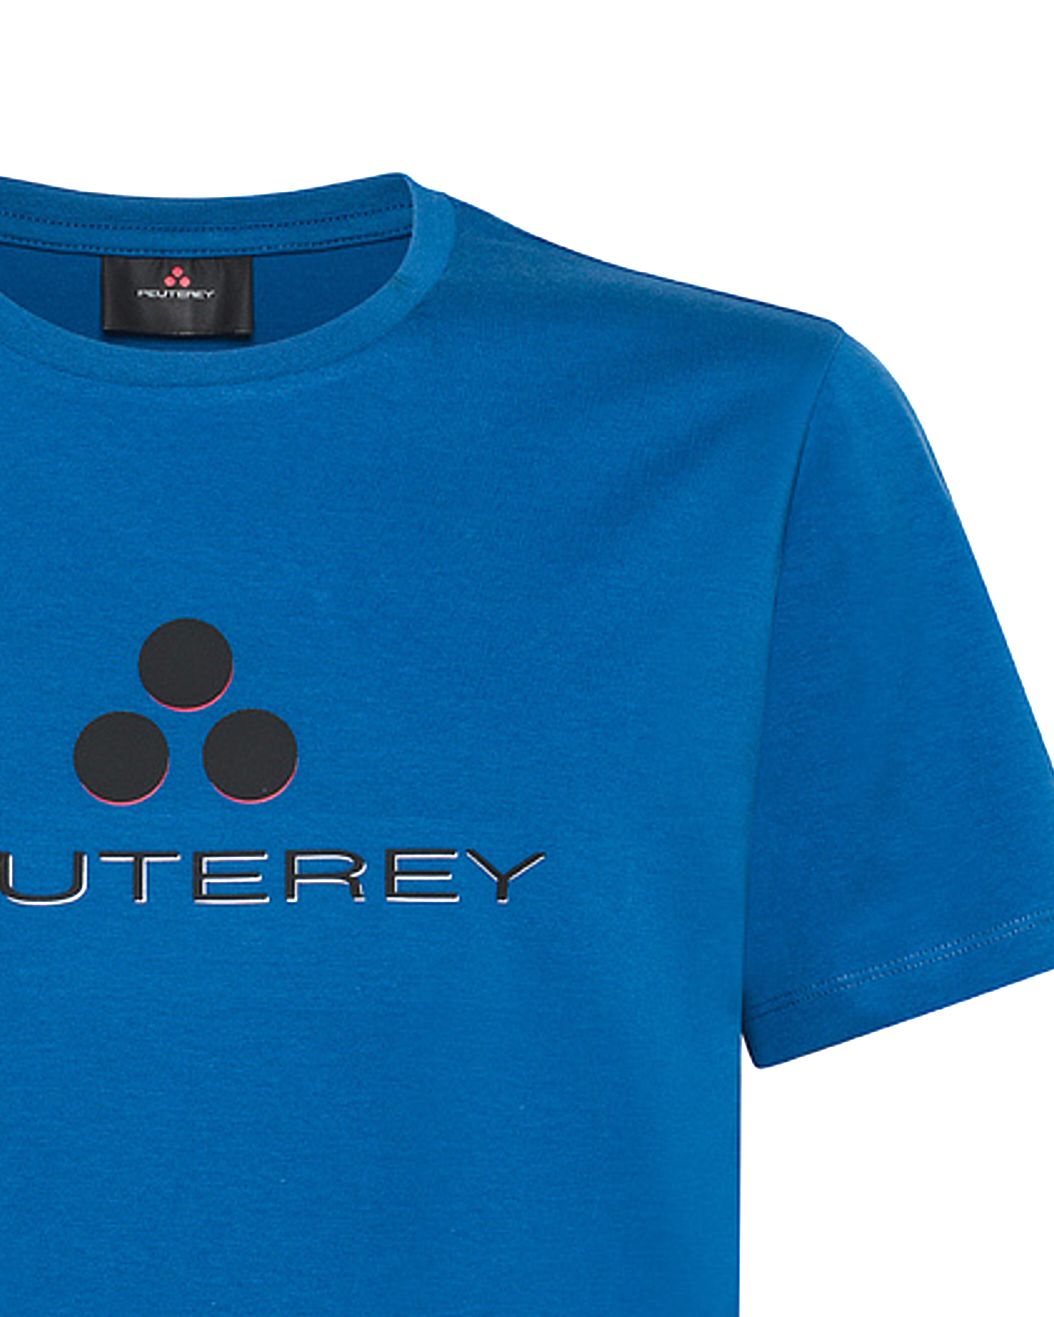 Peuterey T-shirt KM Blauw 083992-001-L